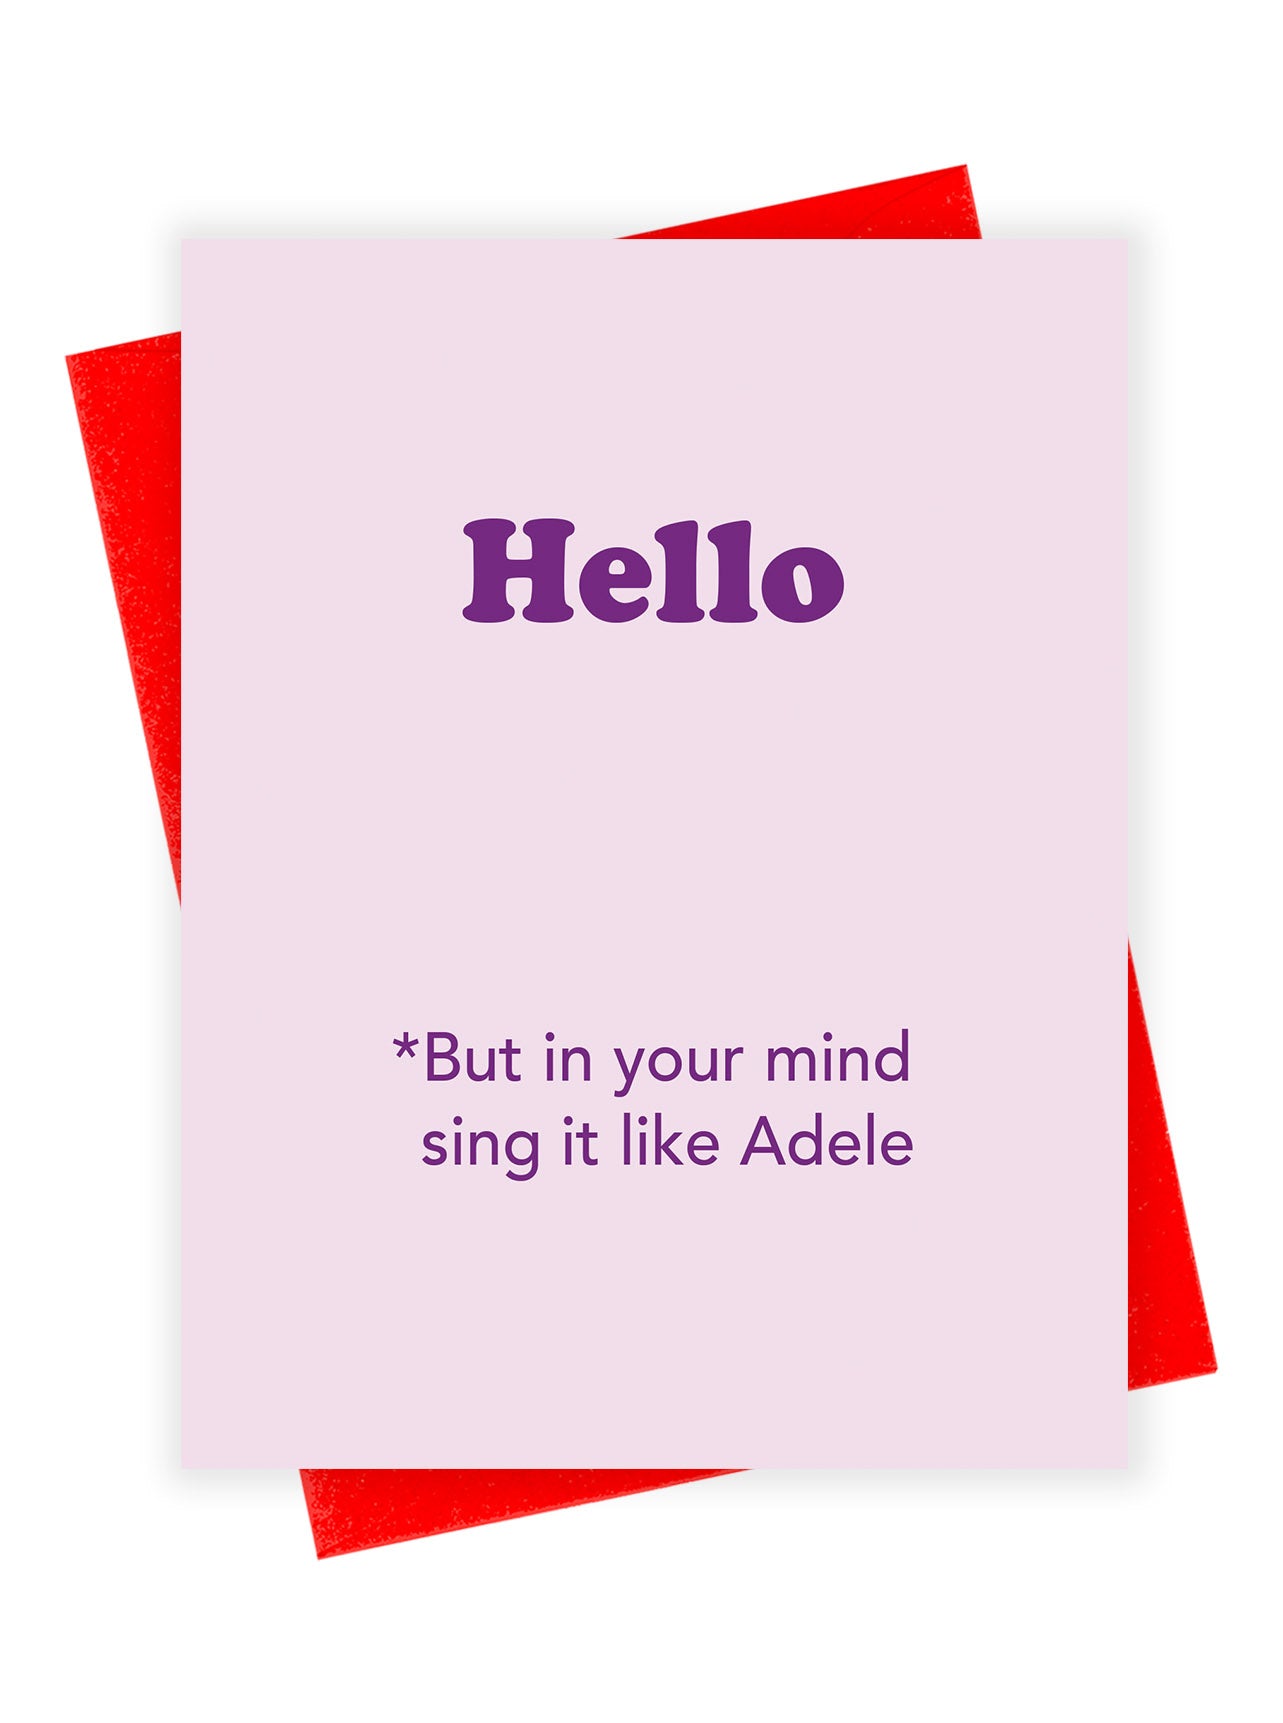 Adele Hello